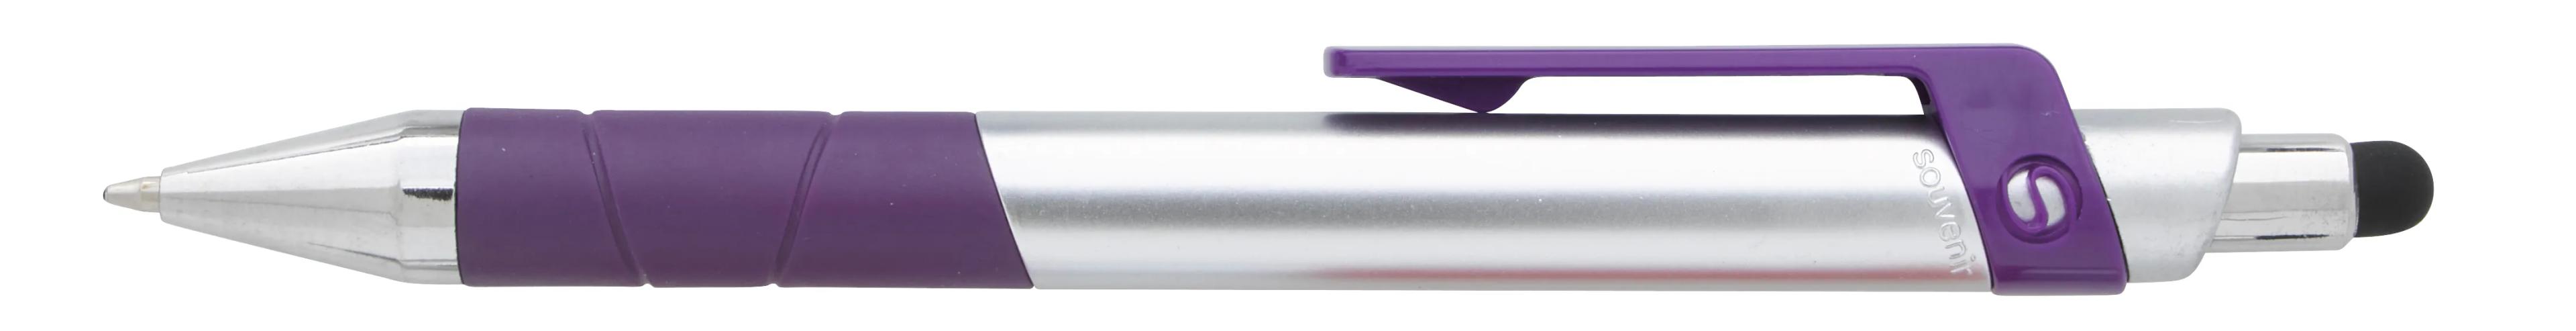 Souvenir® Rize Stylus Pen 13 of 28